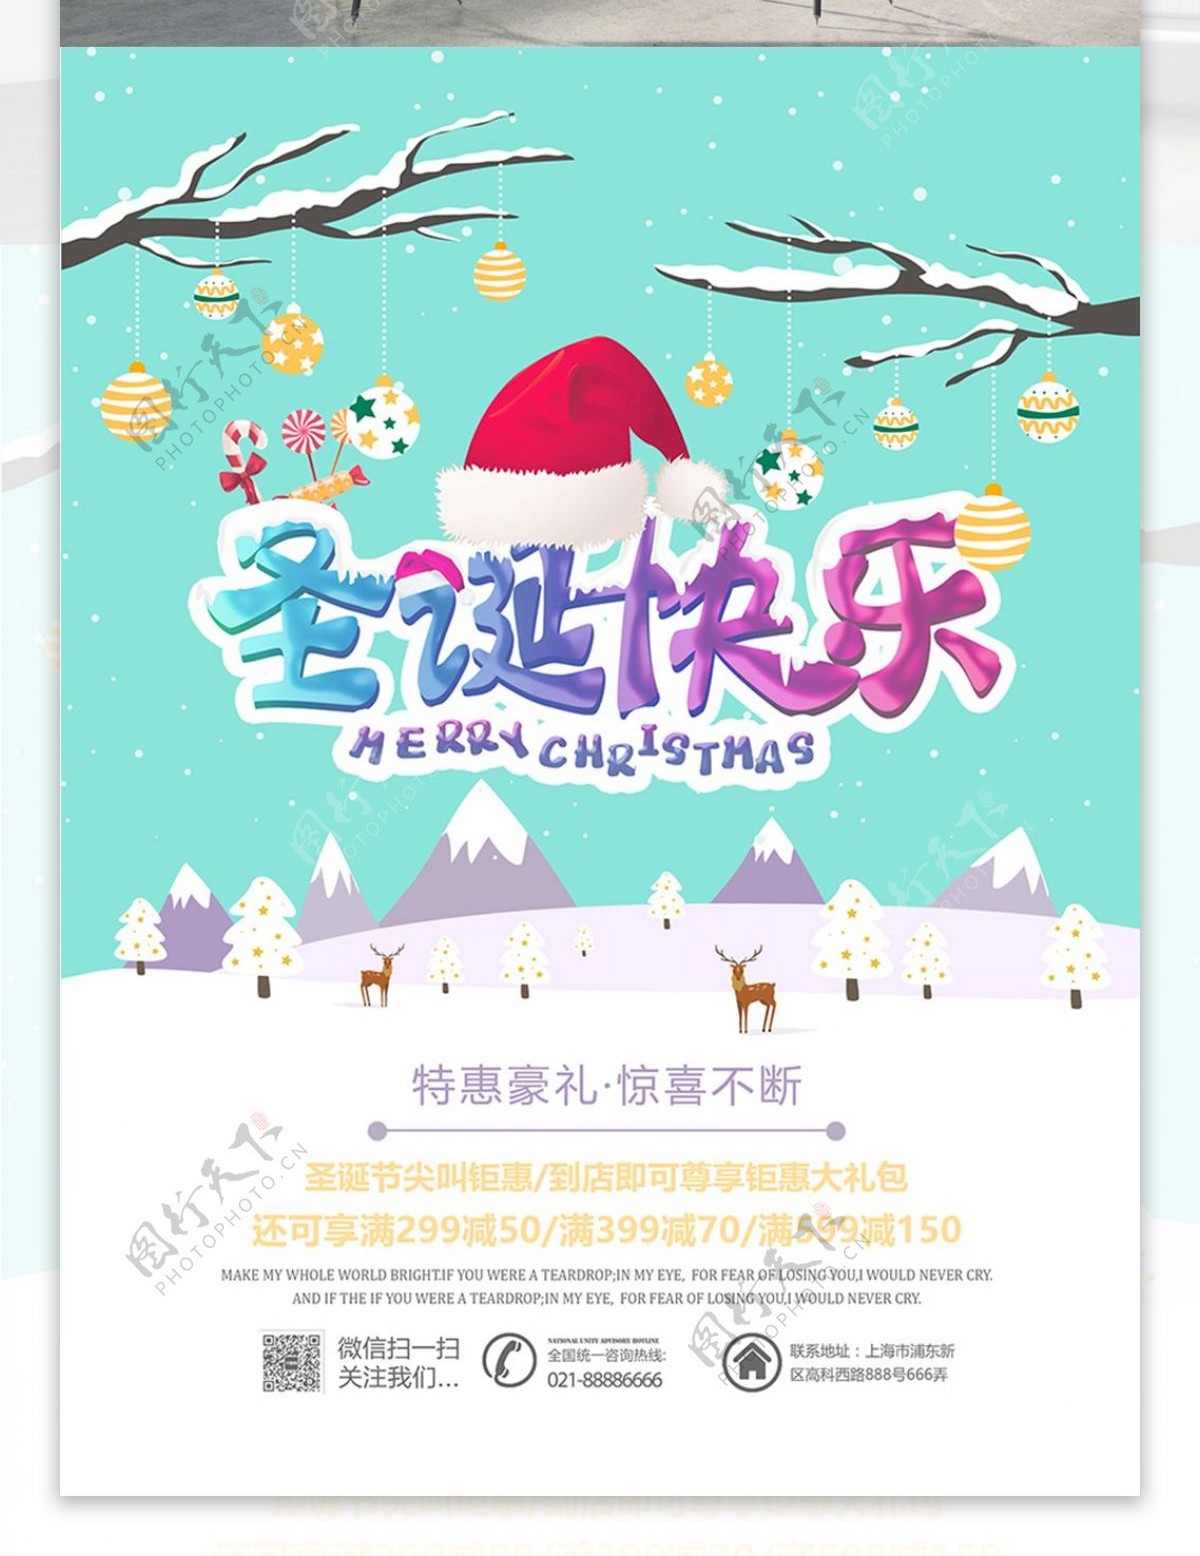 原创清新简约圣诞快乐圣诞节促销海报设计